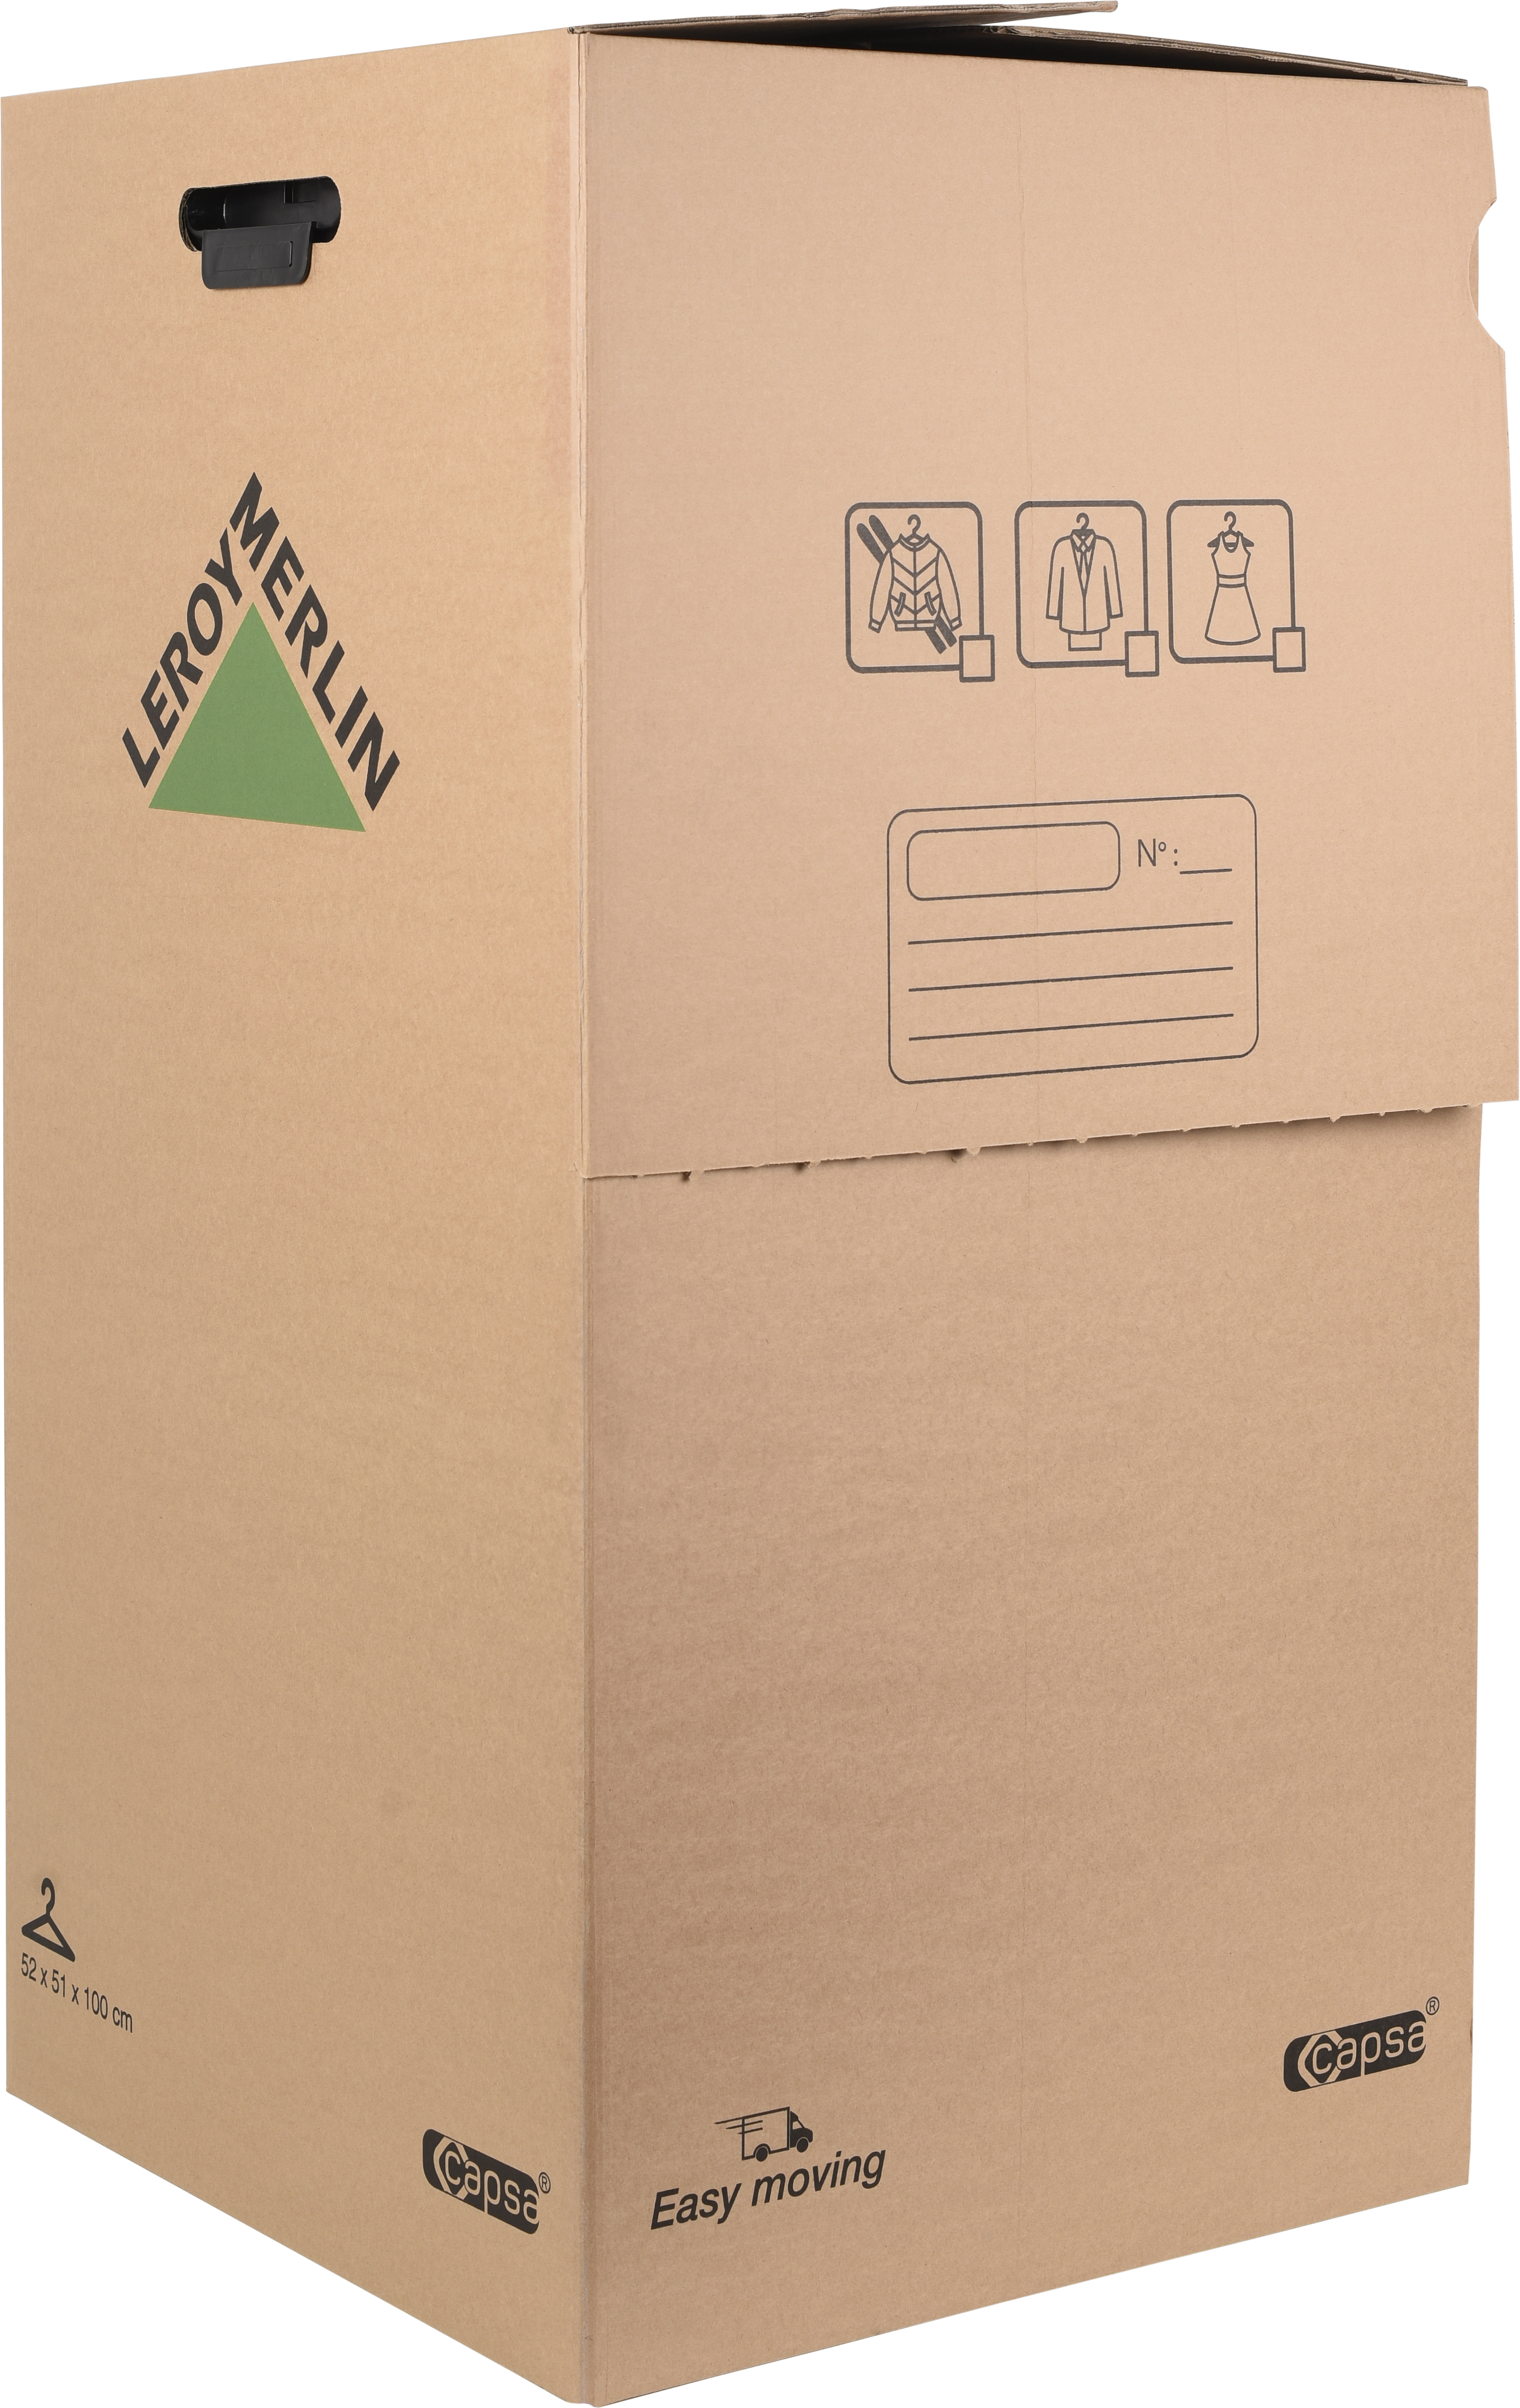 Cajas de cartón para almacenaje: Tipos y recomendaciones de uso